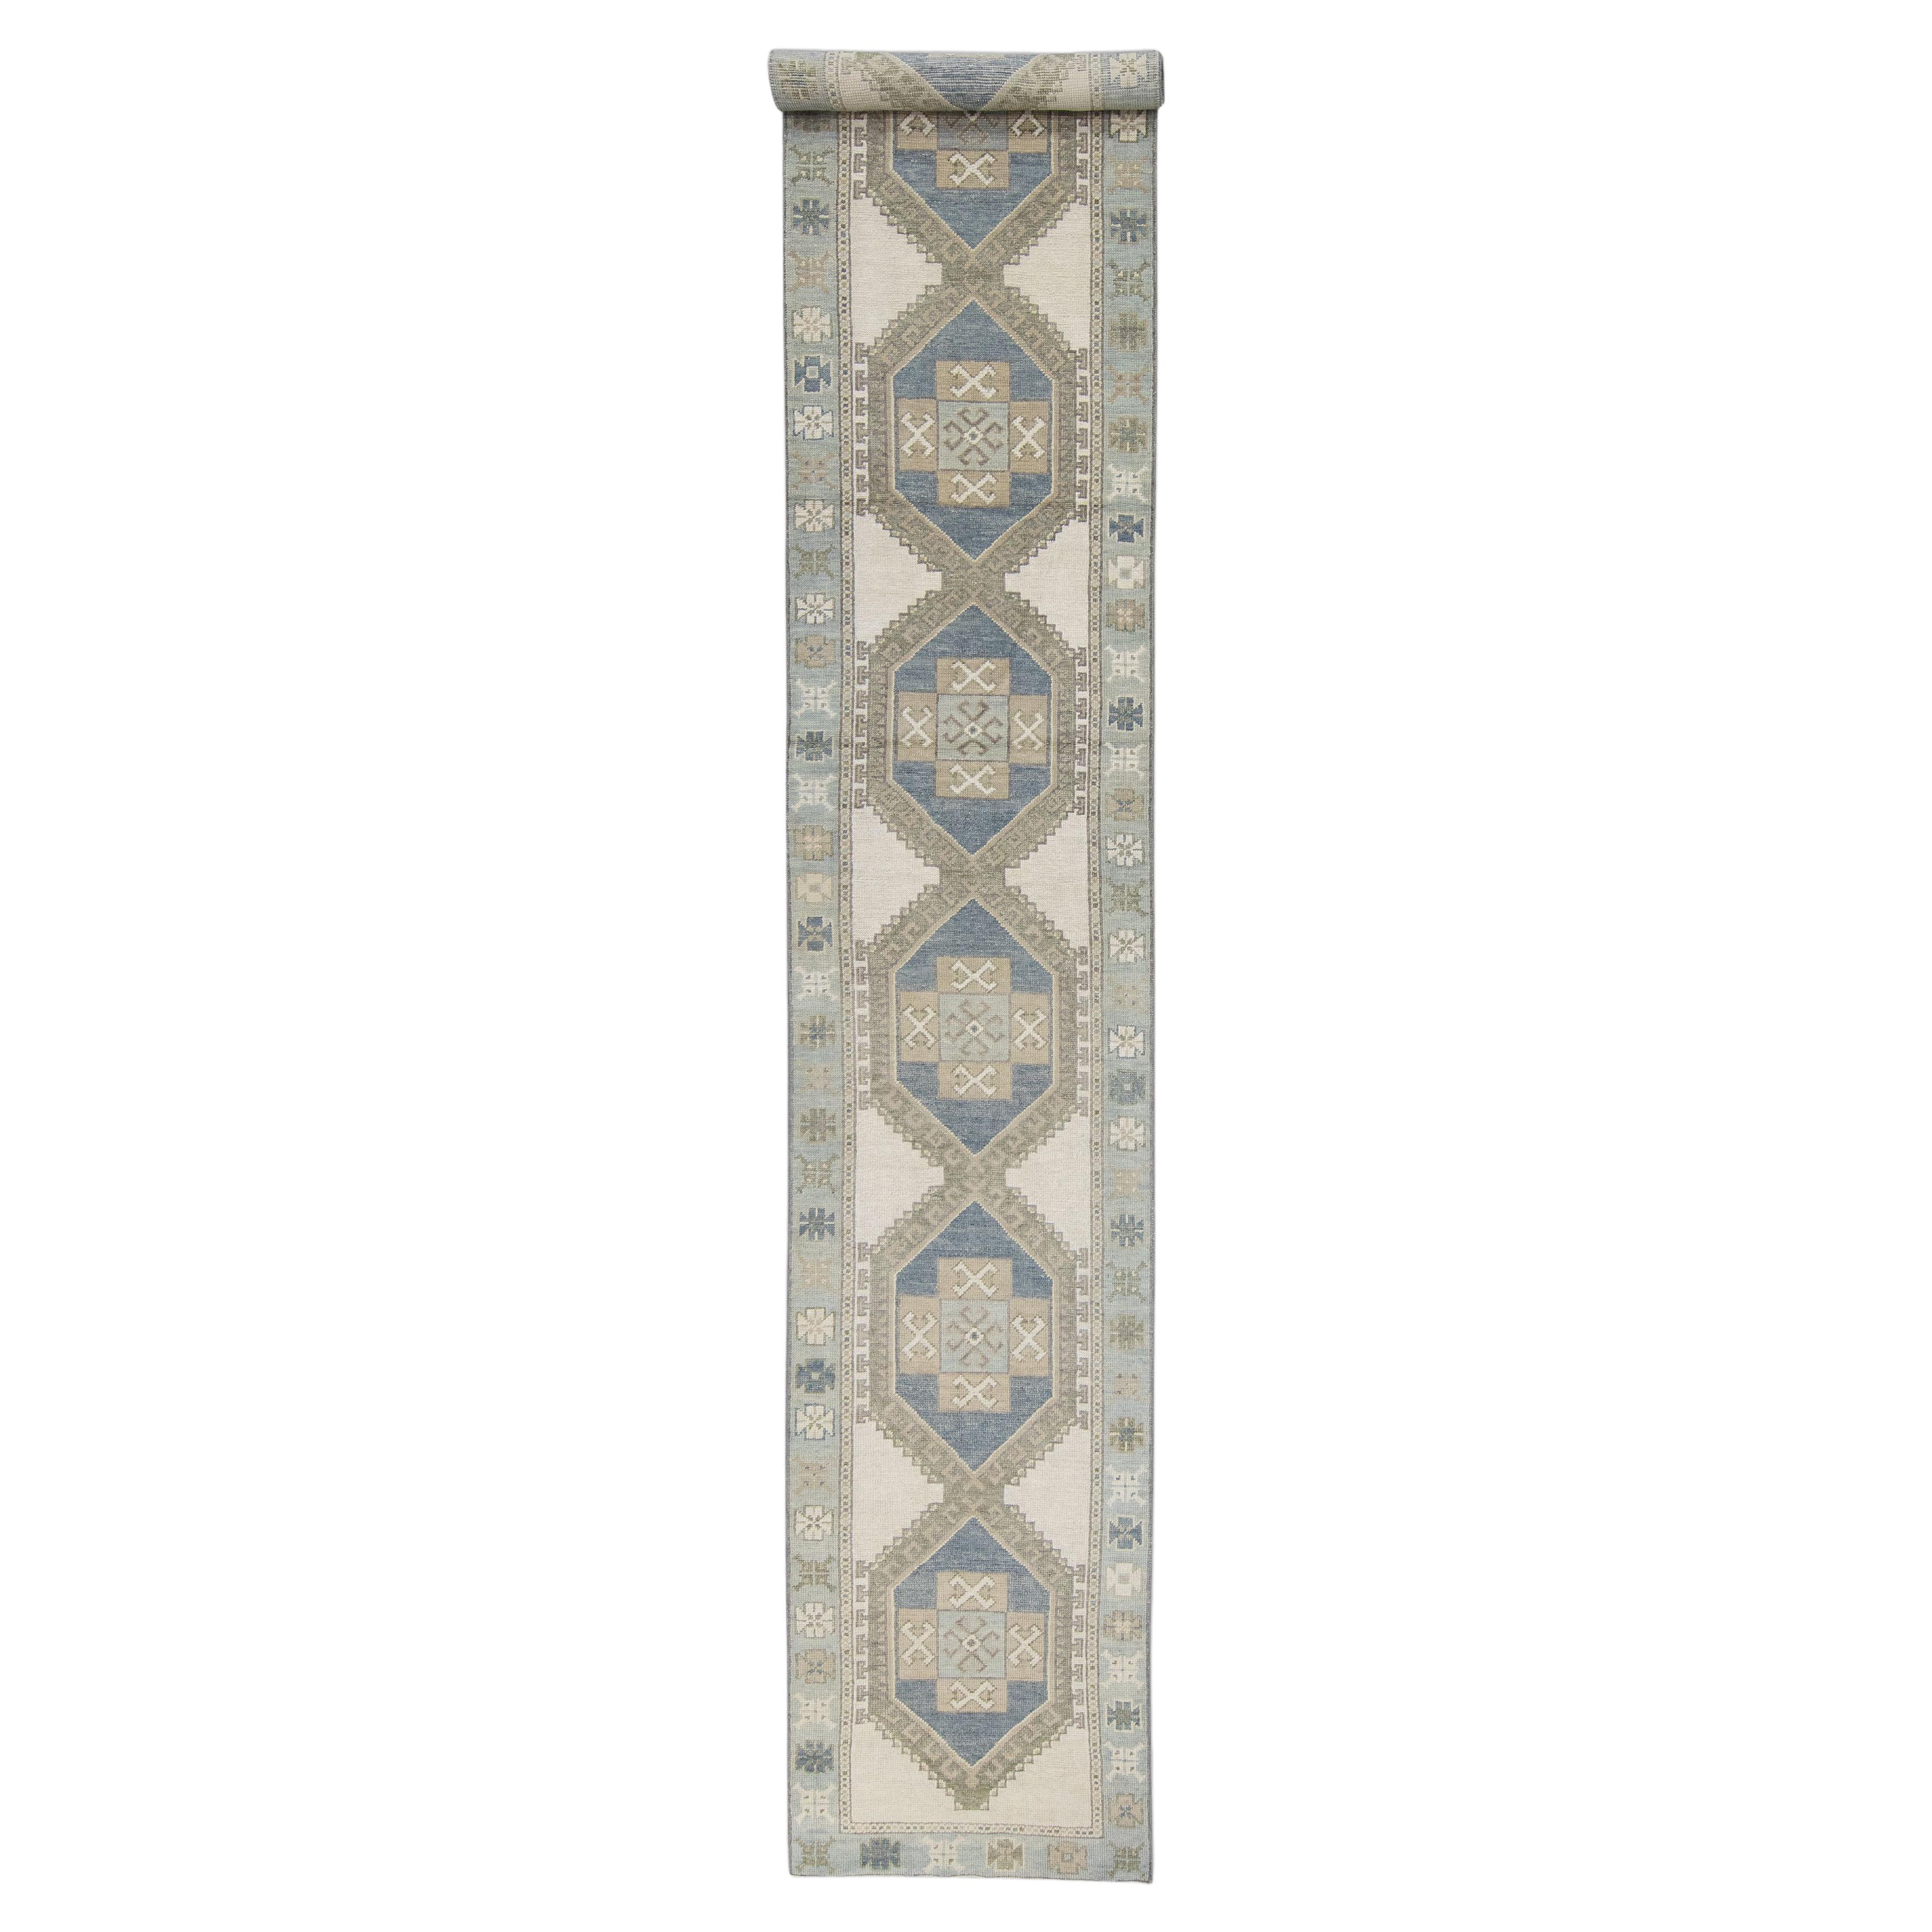 Handgewebter türkischer Oushak-Teppich aus Wolle 2'11"x 18'2"